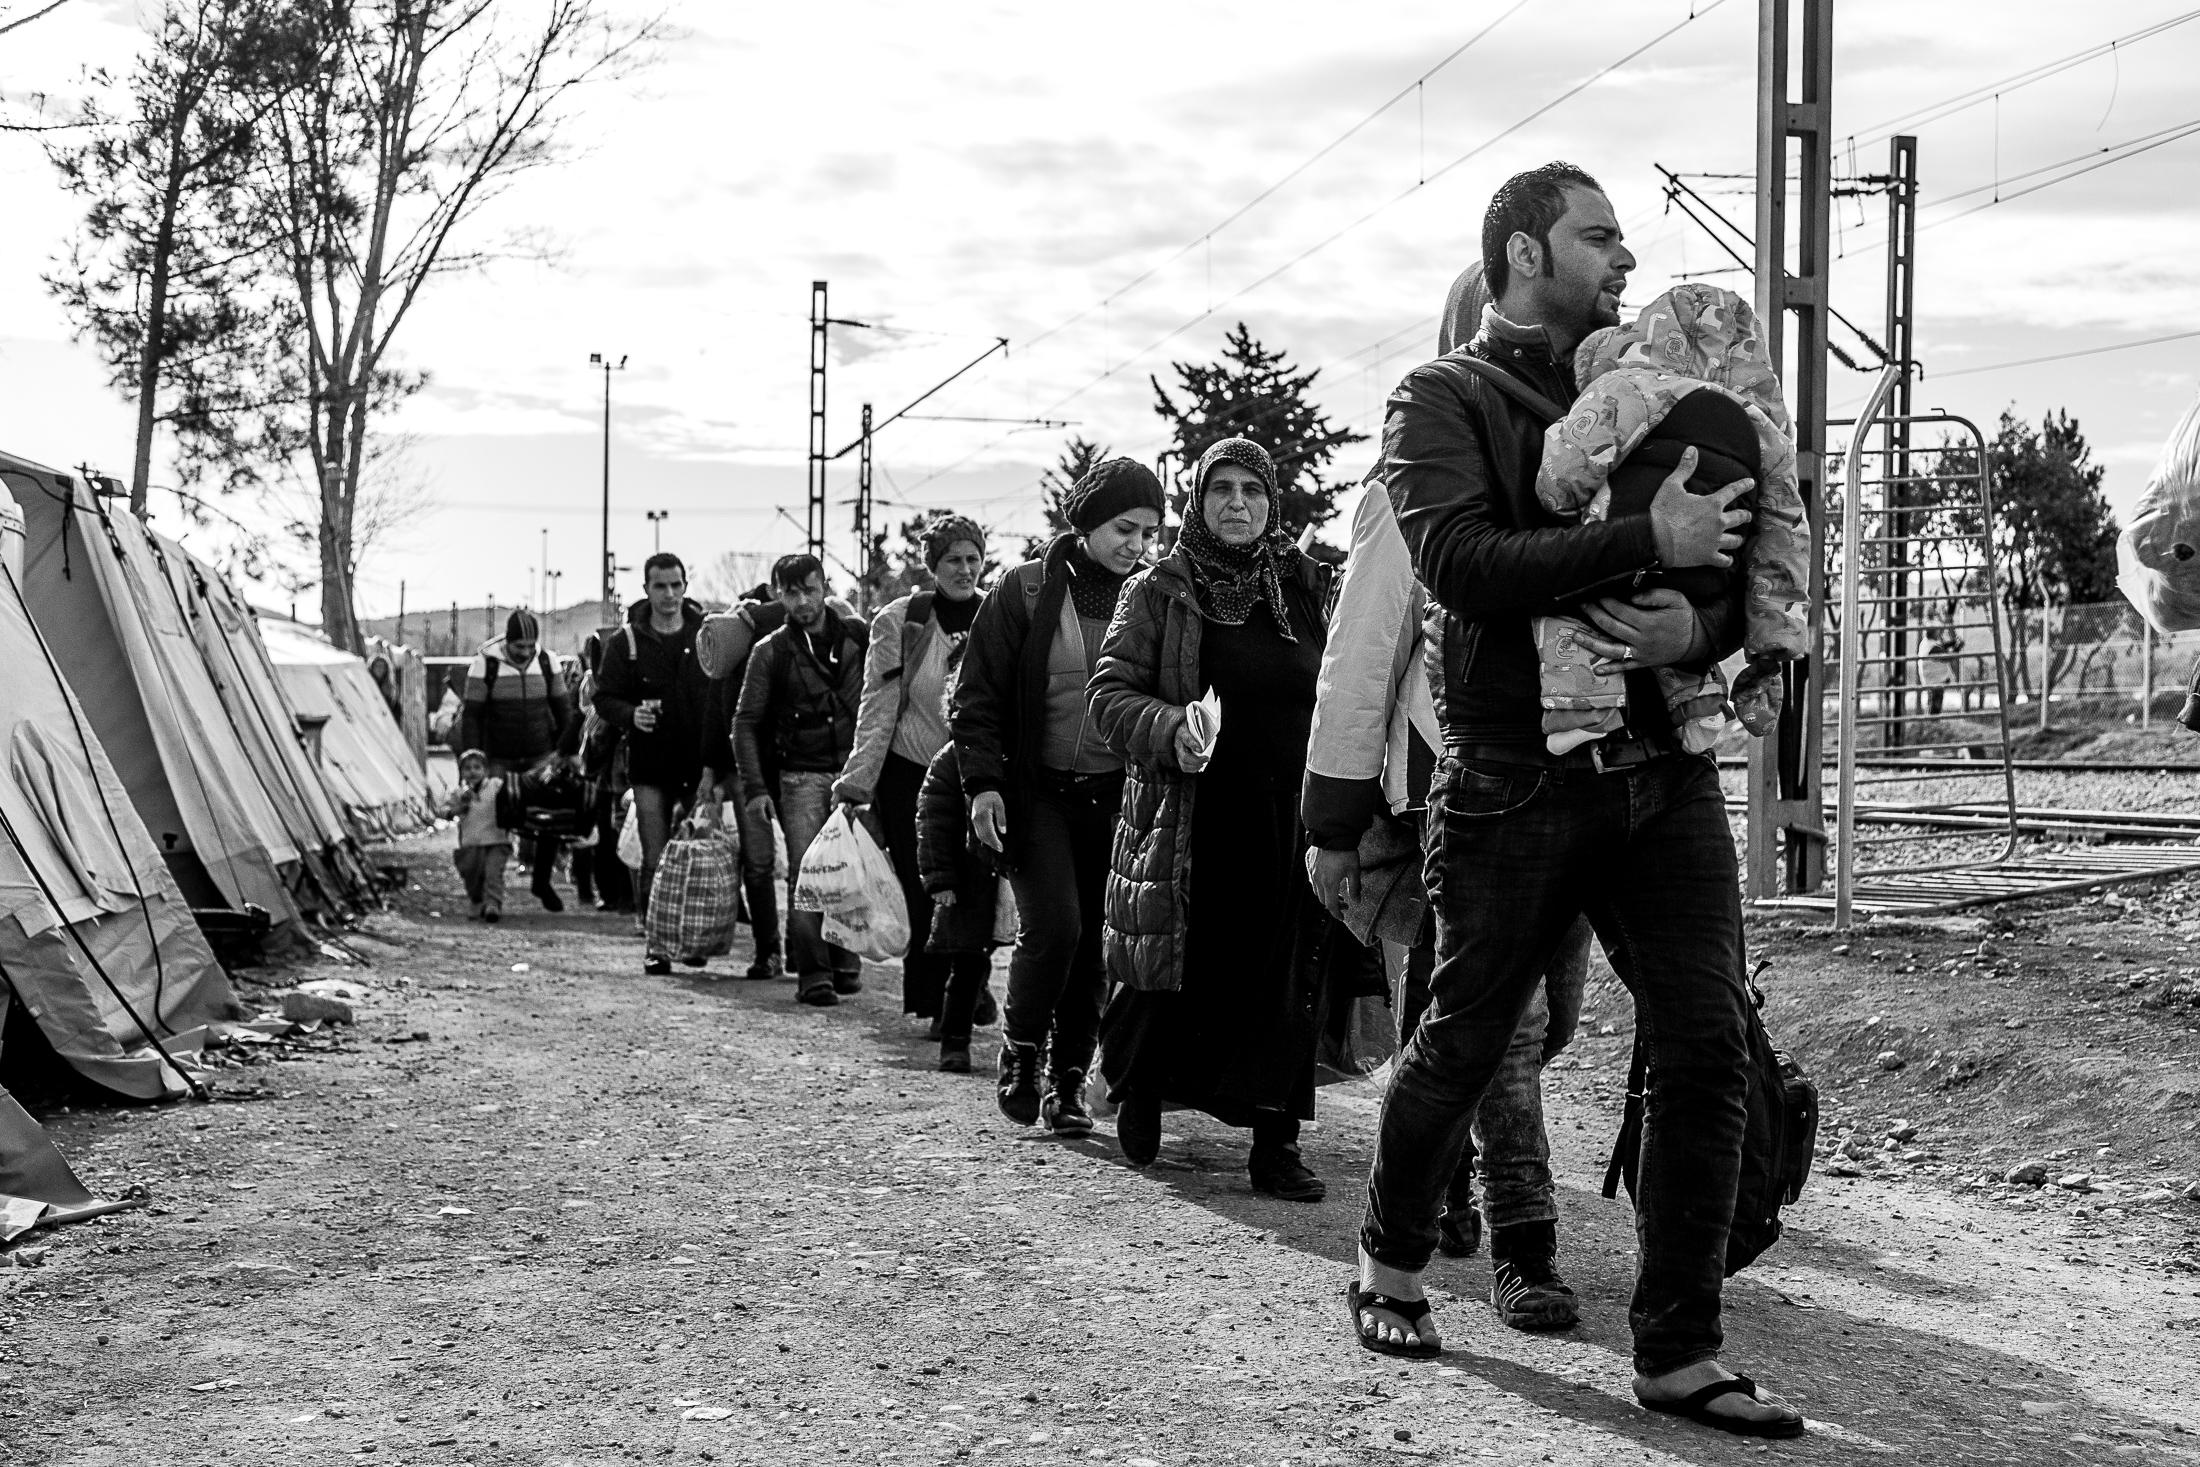 The Way - IDOMENI, GREECE - FEBRUARY 11: A group of refugees walks...